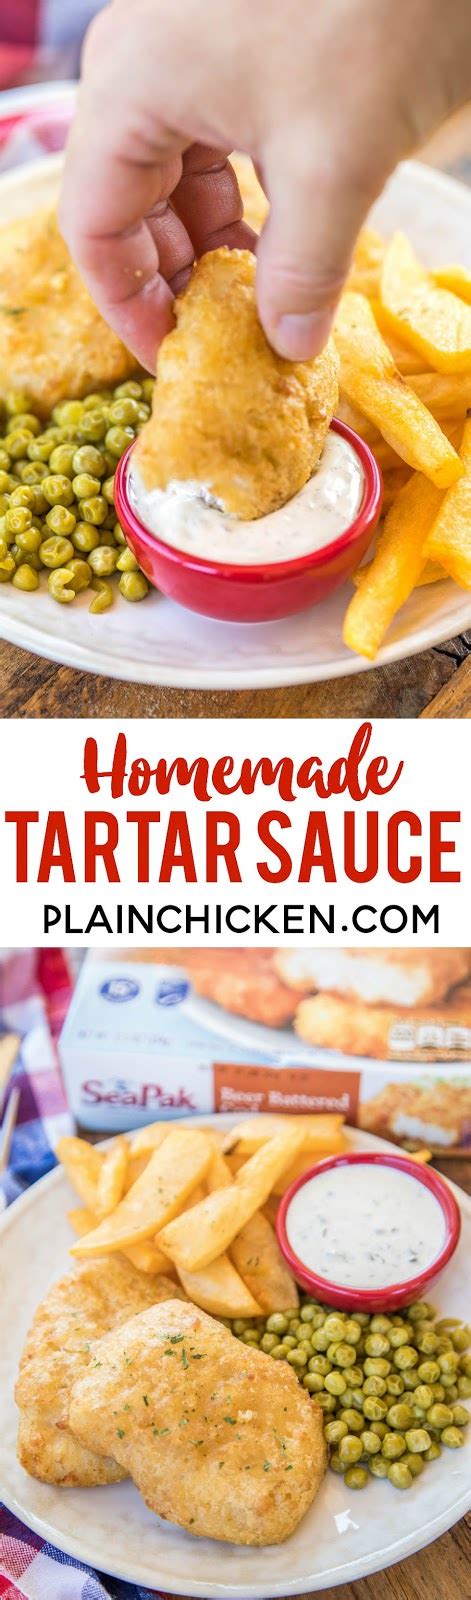 Homemade Tartar Sauce Plain Chicken